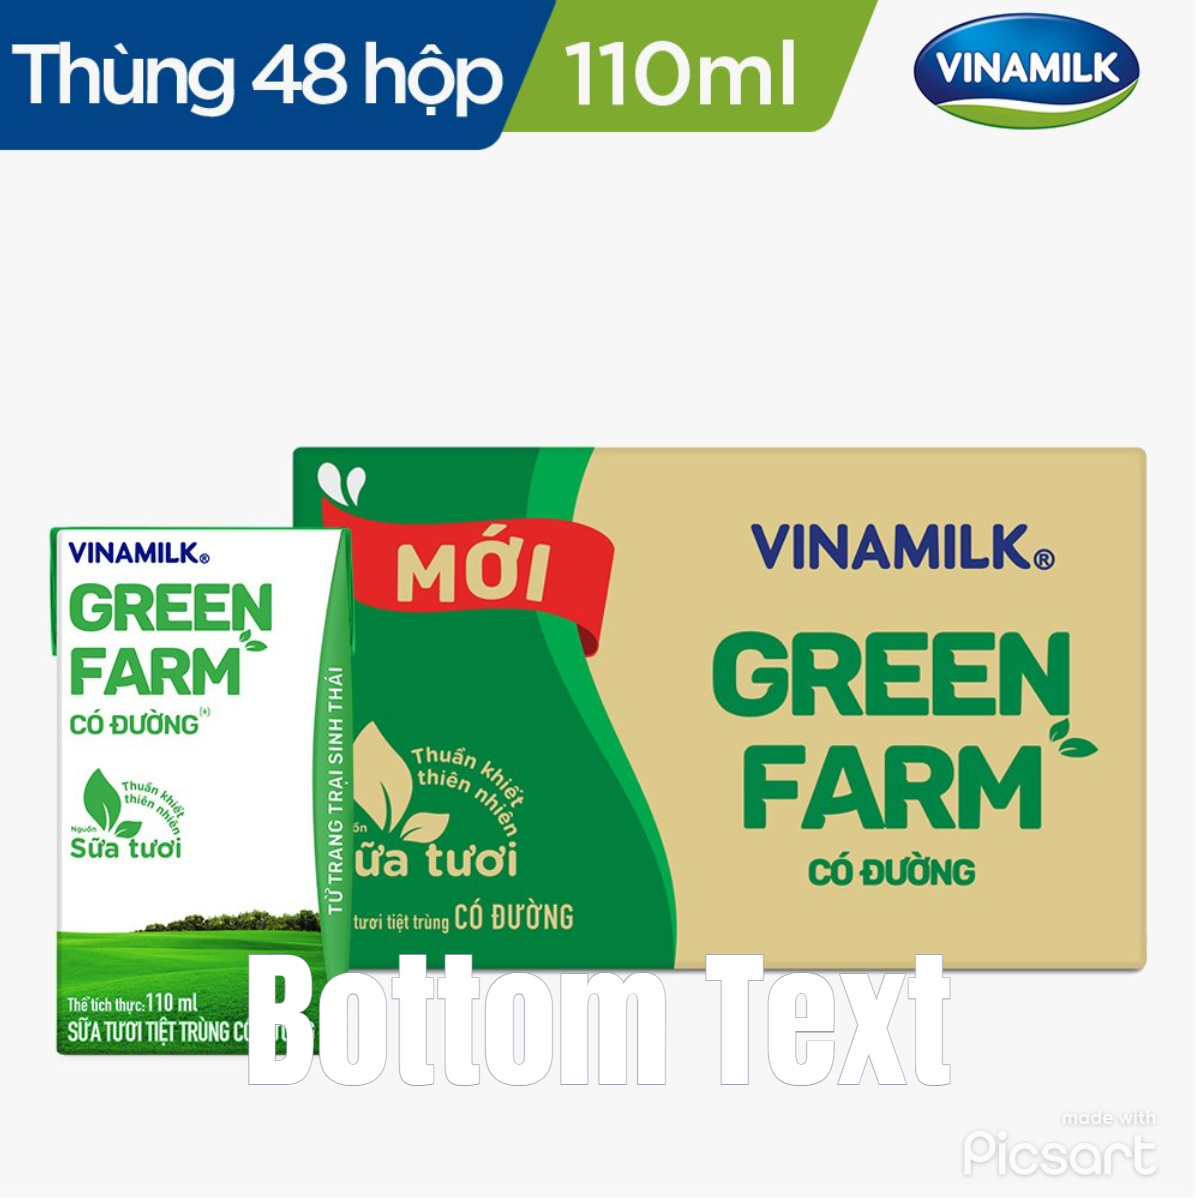 Thùng 48 hộp Sữa Tươi Tiệt Trùng Vinamilk Green Farm có đường 110ml